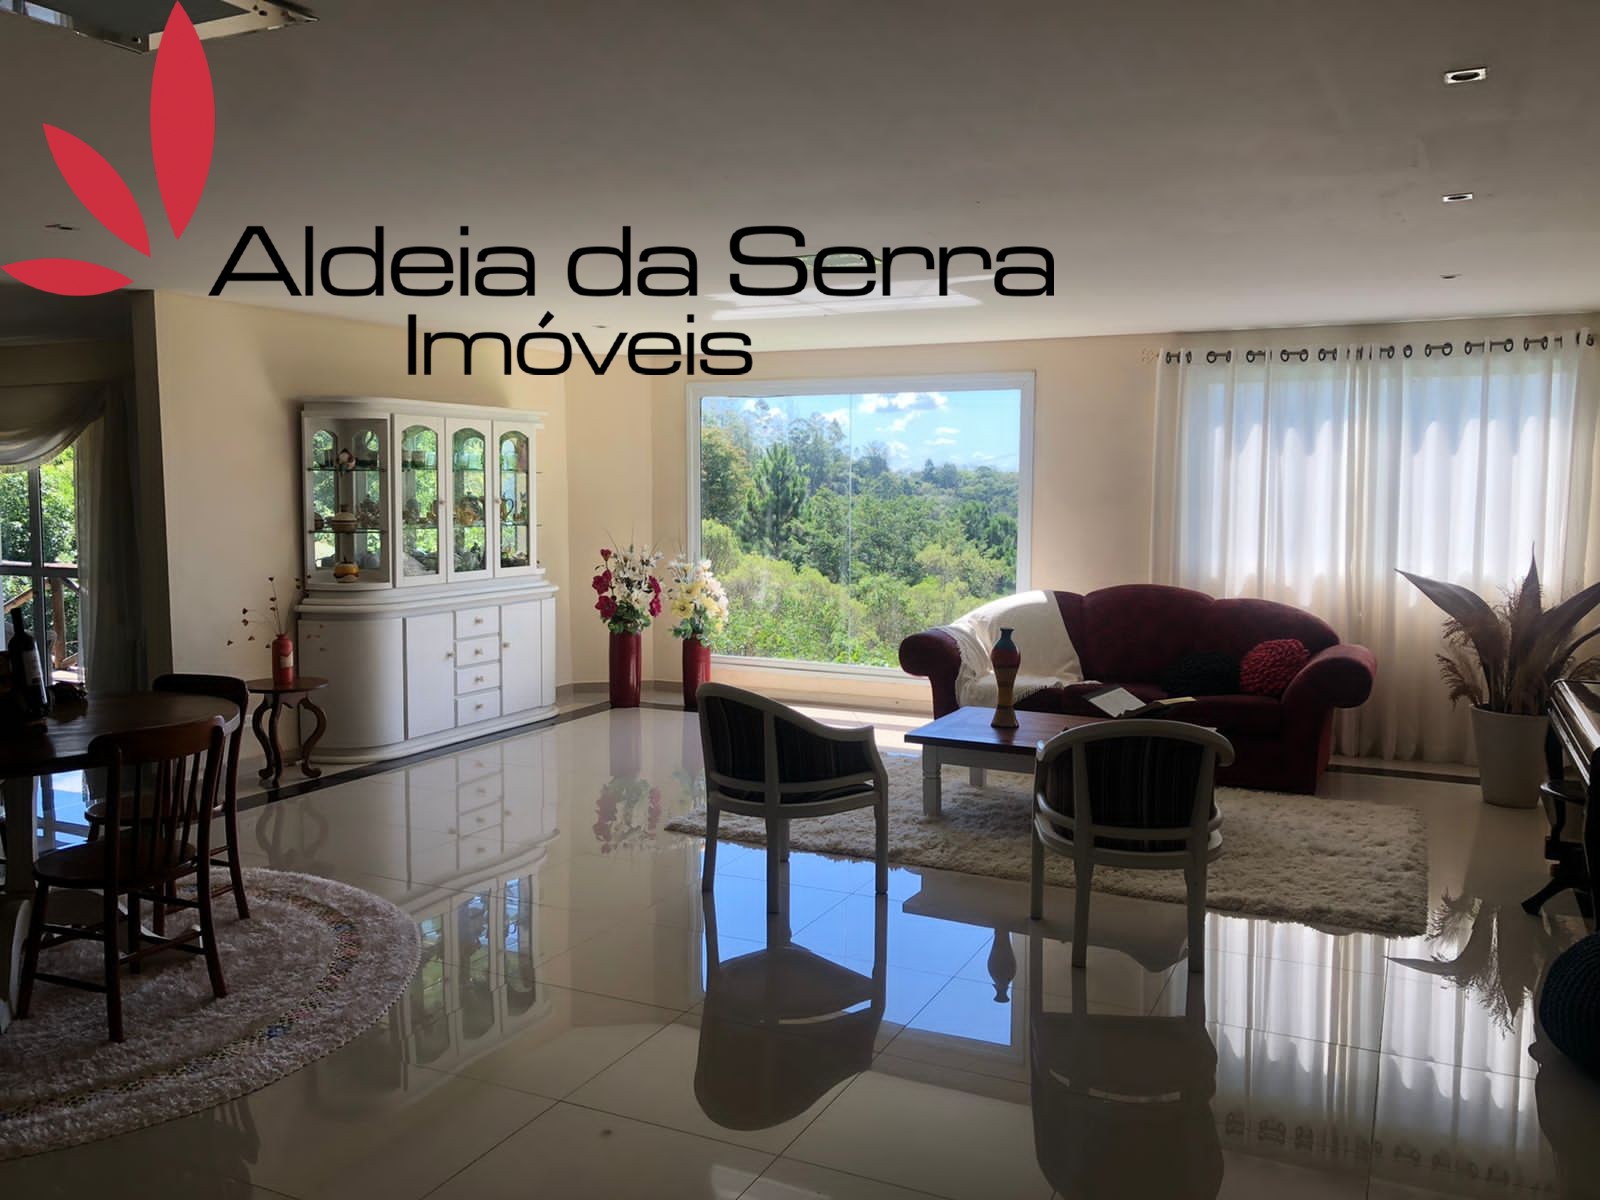 /admin/imoveis/fotos/IMG-20220120-WA0015.jpg Aldeia da Serra Imoveis